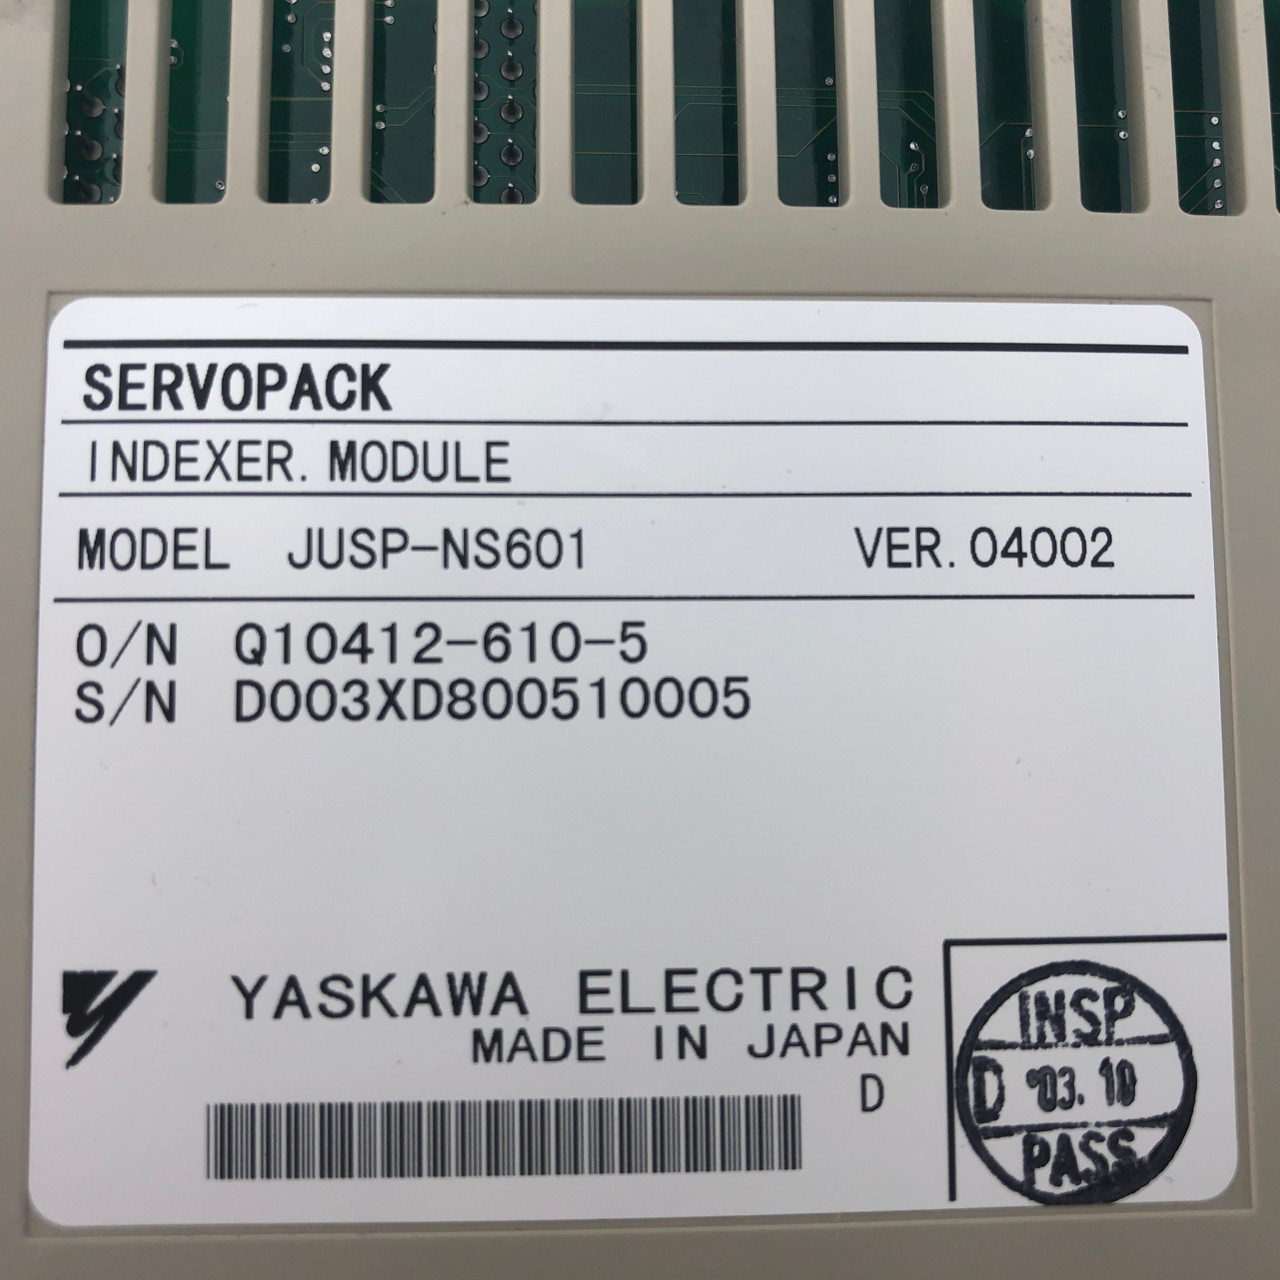 YASKAWA SGDH-04AE 200V SERVOPACK WITH JUSP-NS601 INDEXER - NEW